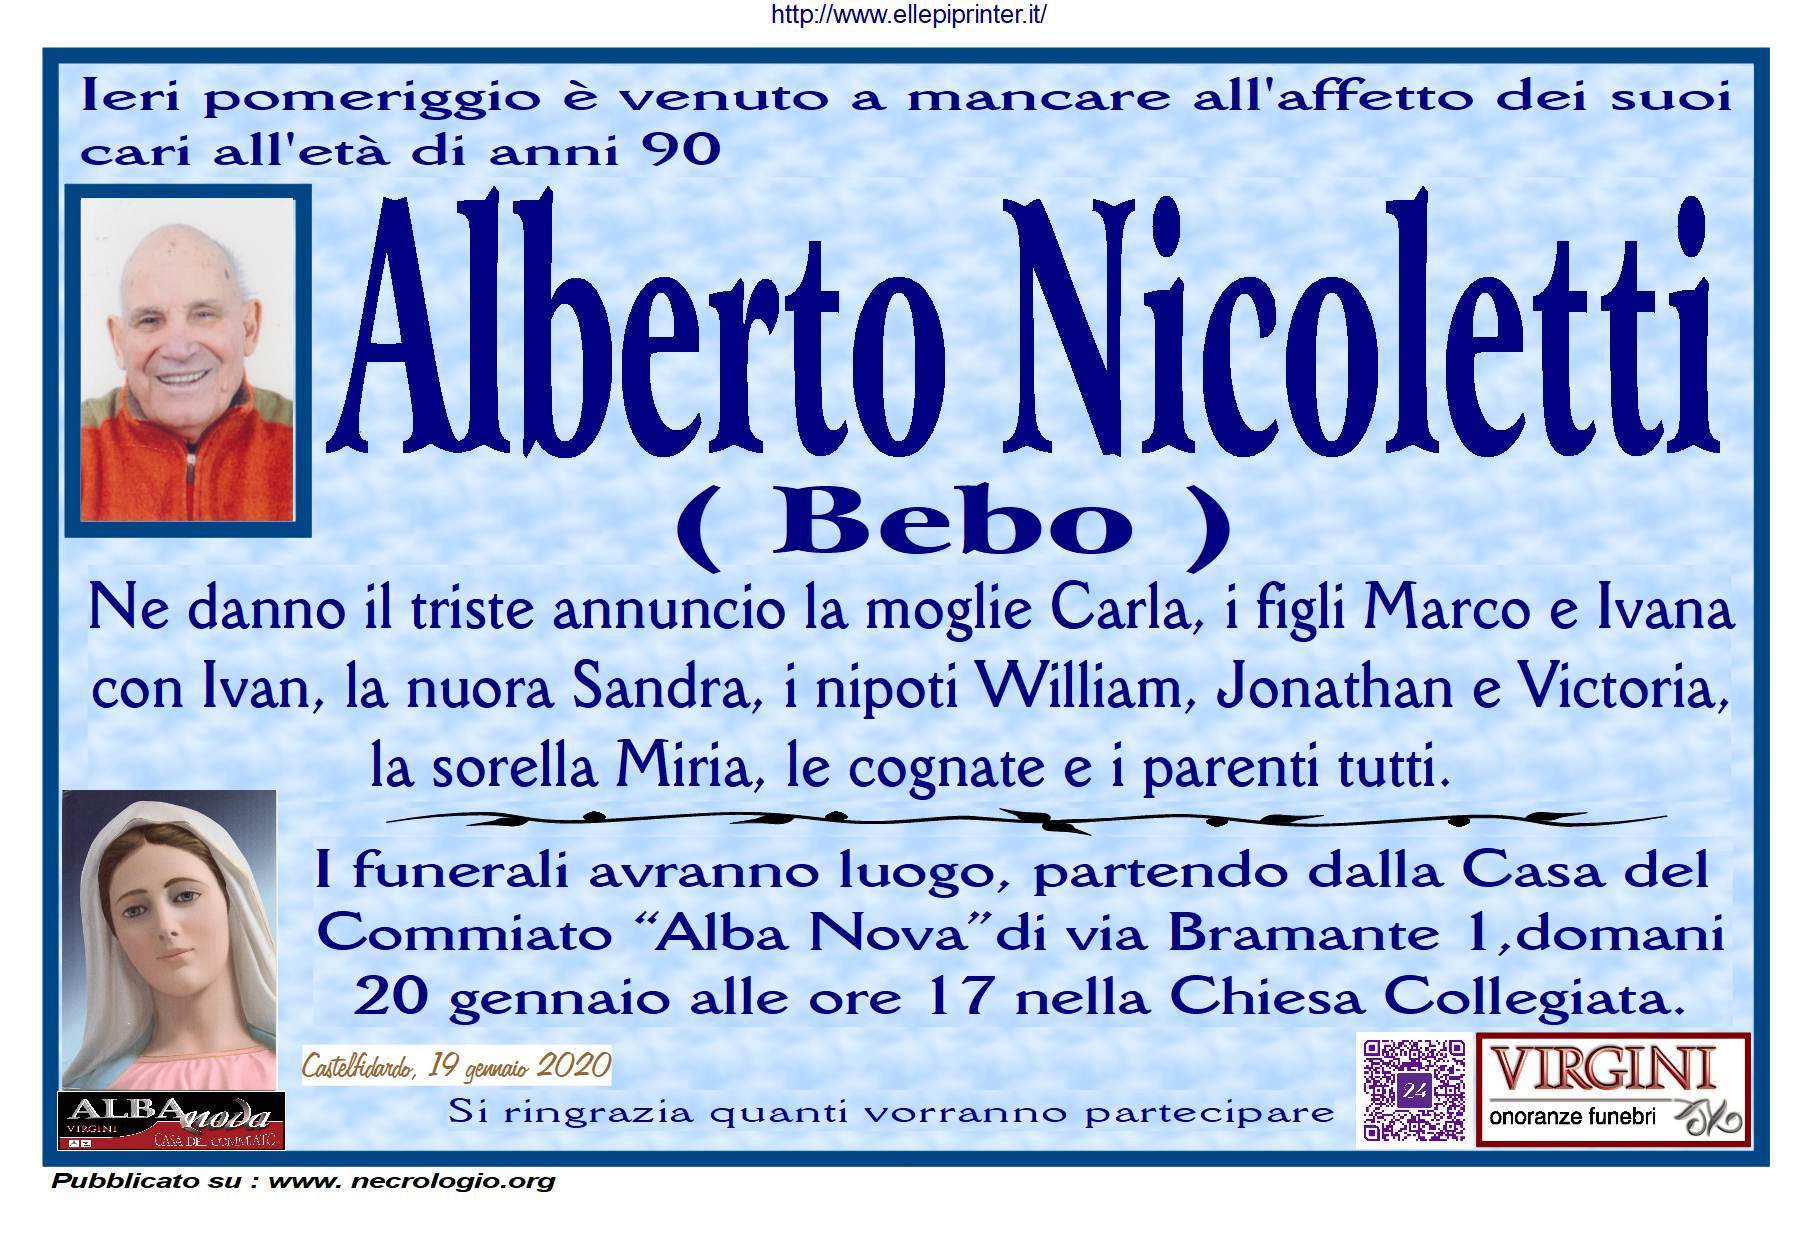 Alberto Nicoletti